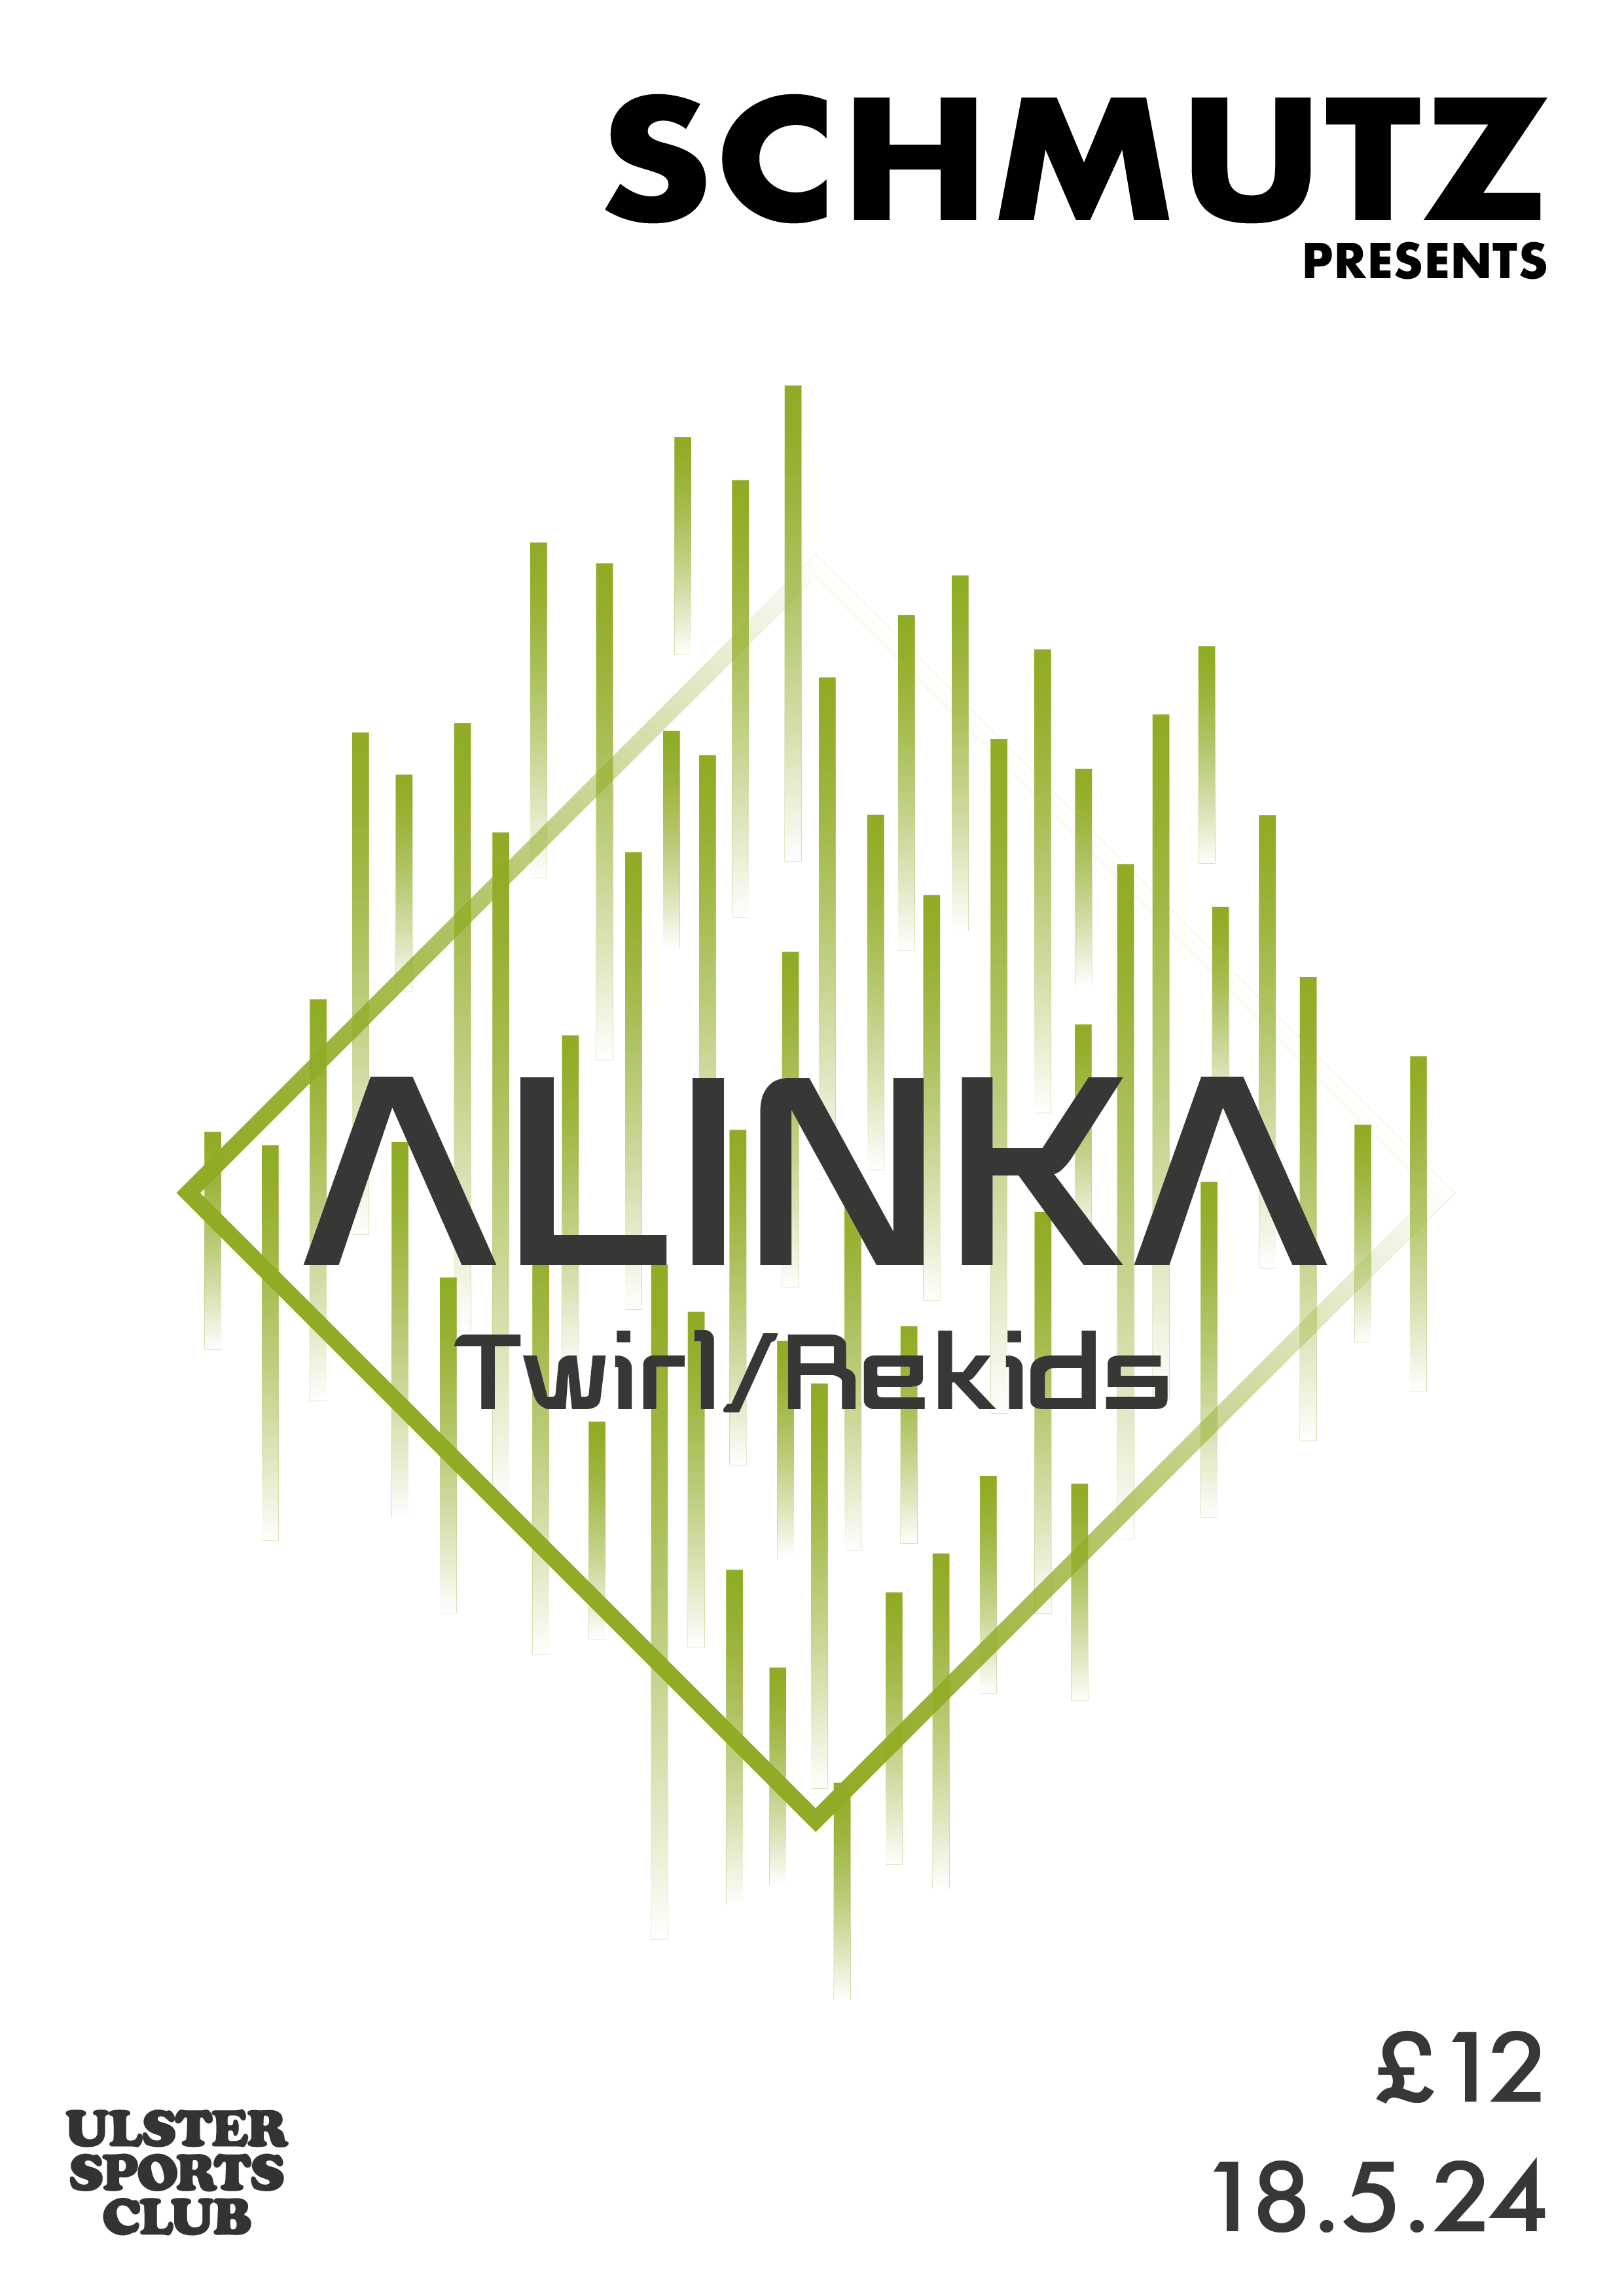 Schmutz Presents Alinka (Rekids/Twirl) - Página trasera